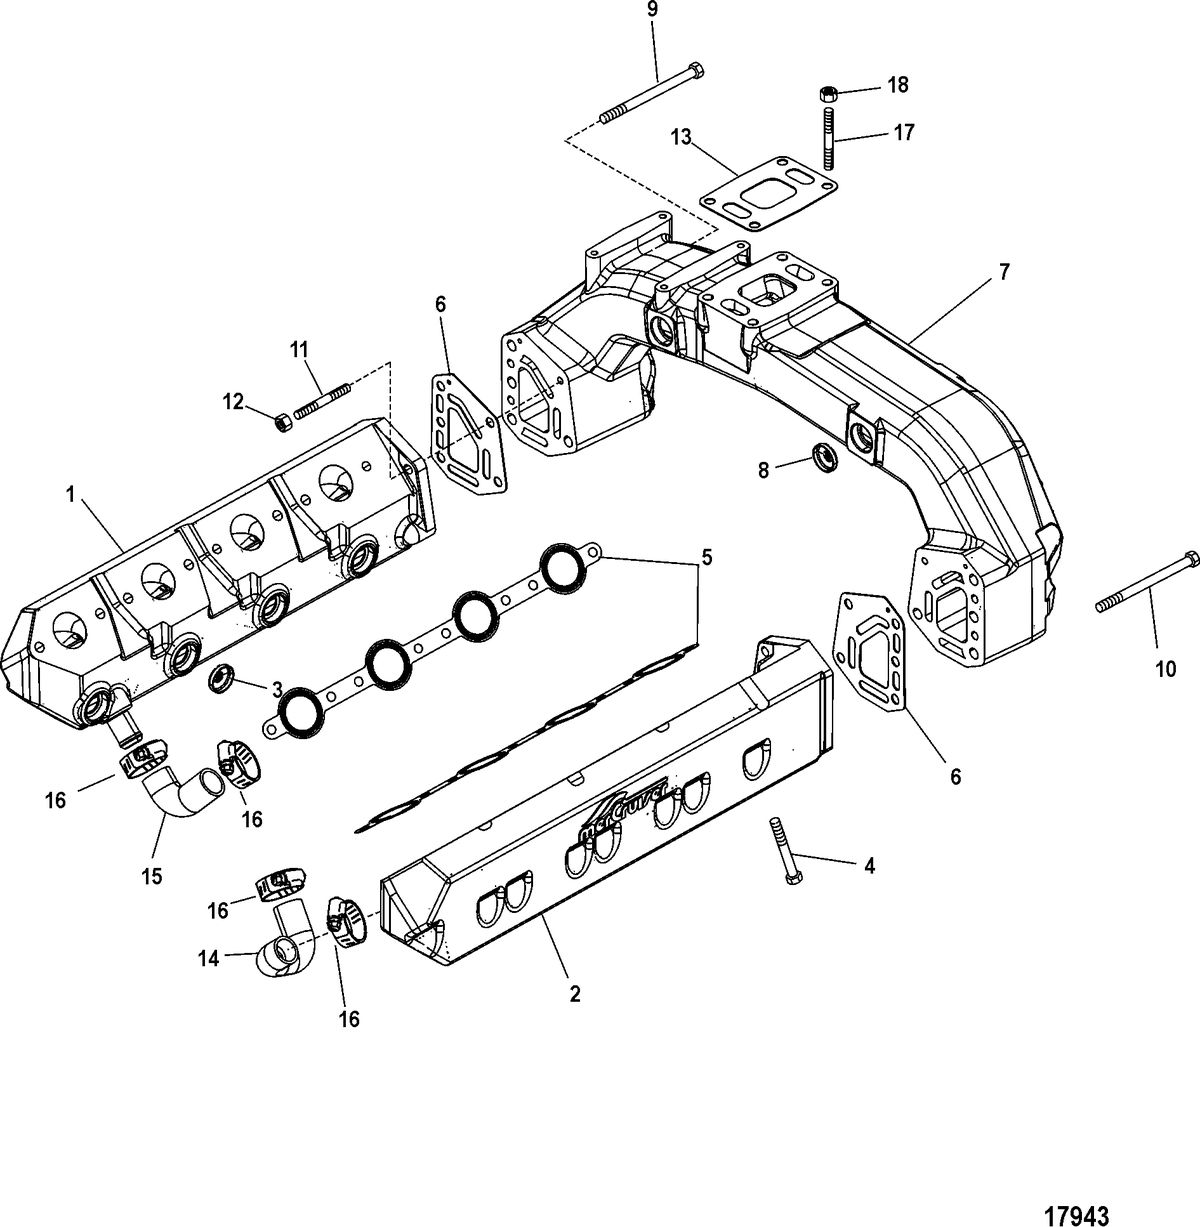 MERCRUISER CUMMINS/MERCRUISER DIESEL 7.3L D-TRONIC BRAVO Exhaust Manifold